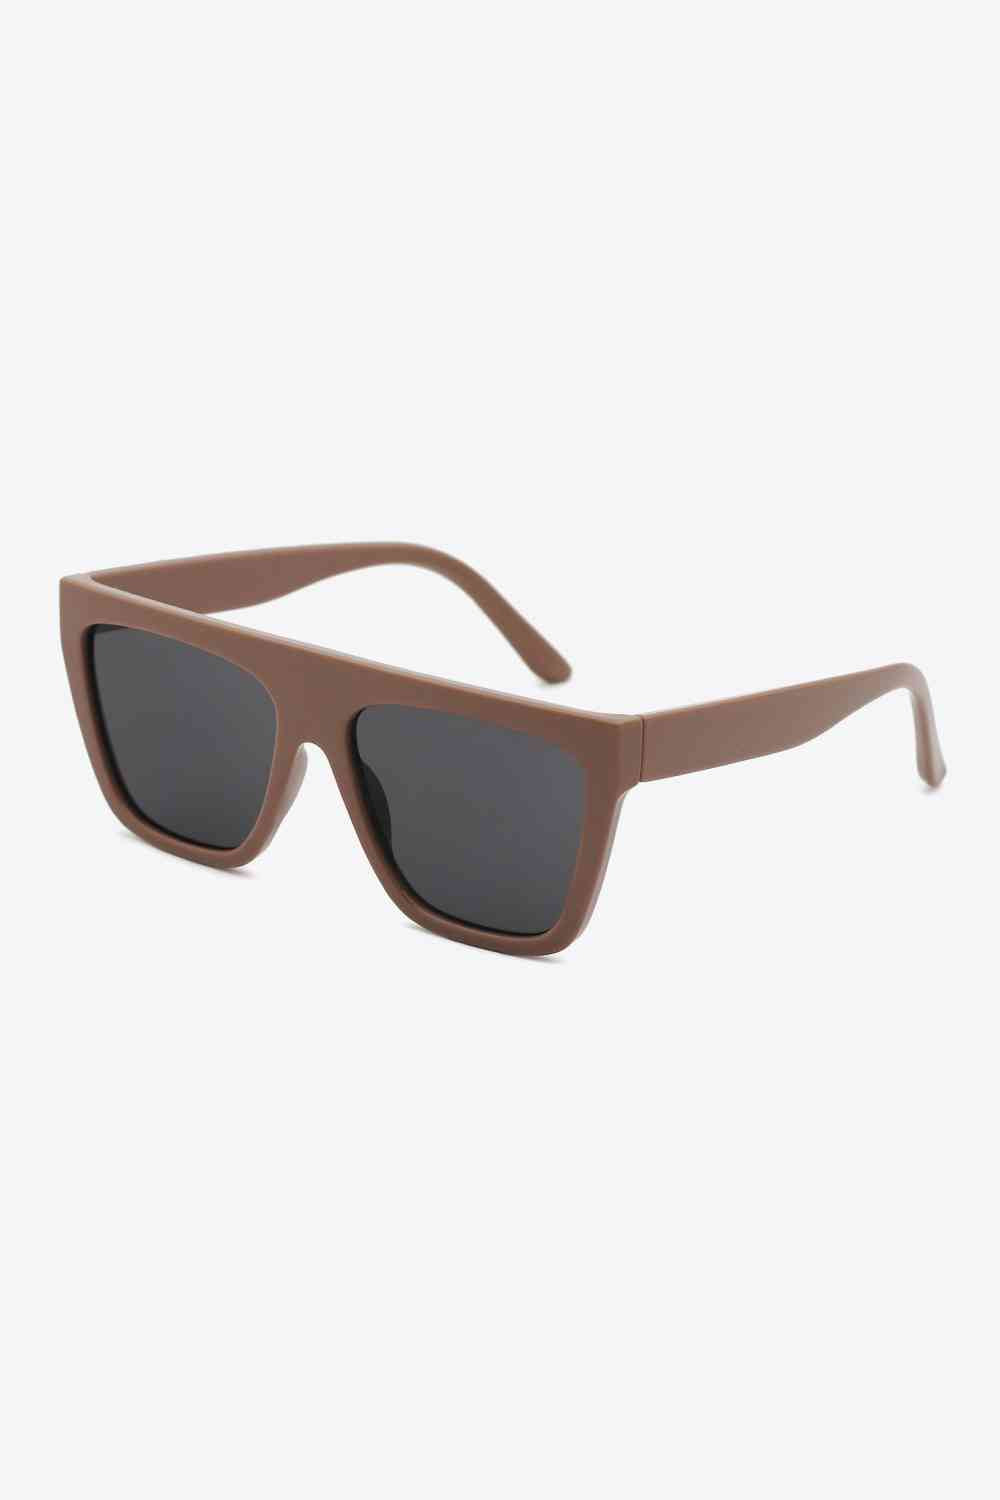 UV400 Polycarbonate Wayfarer Sunglasses – Jolie Occasions